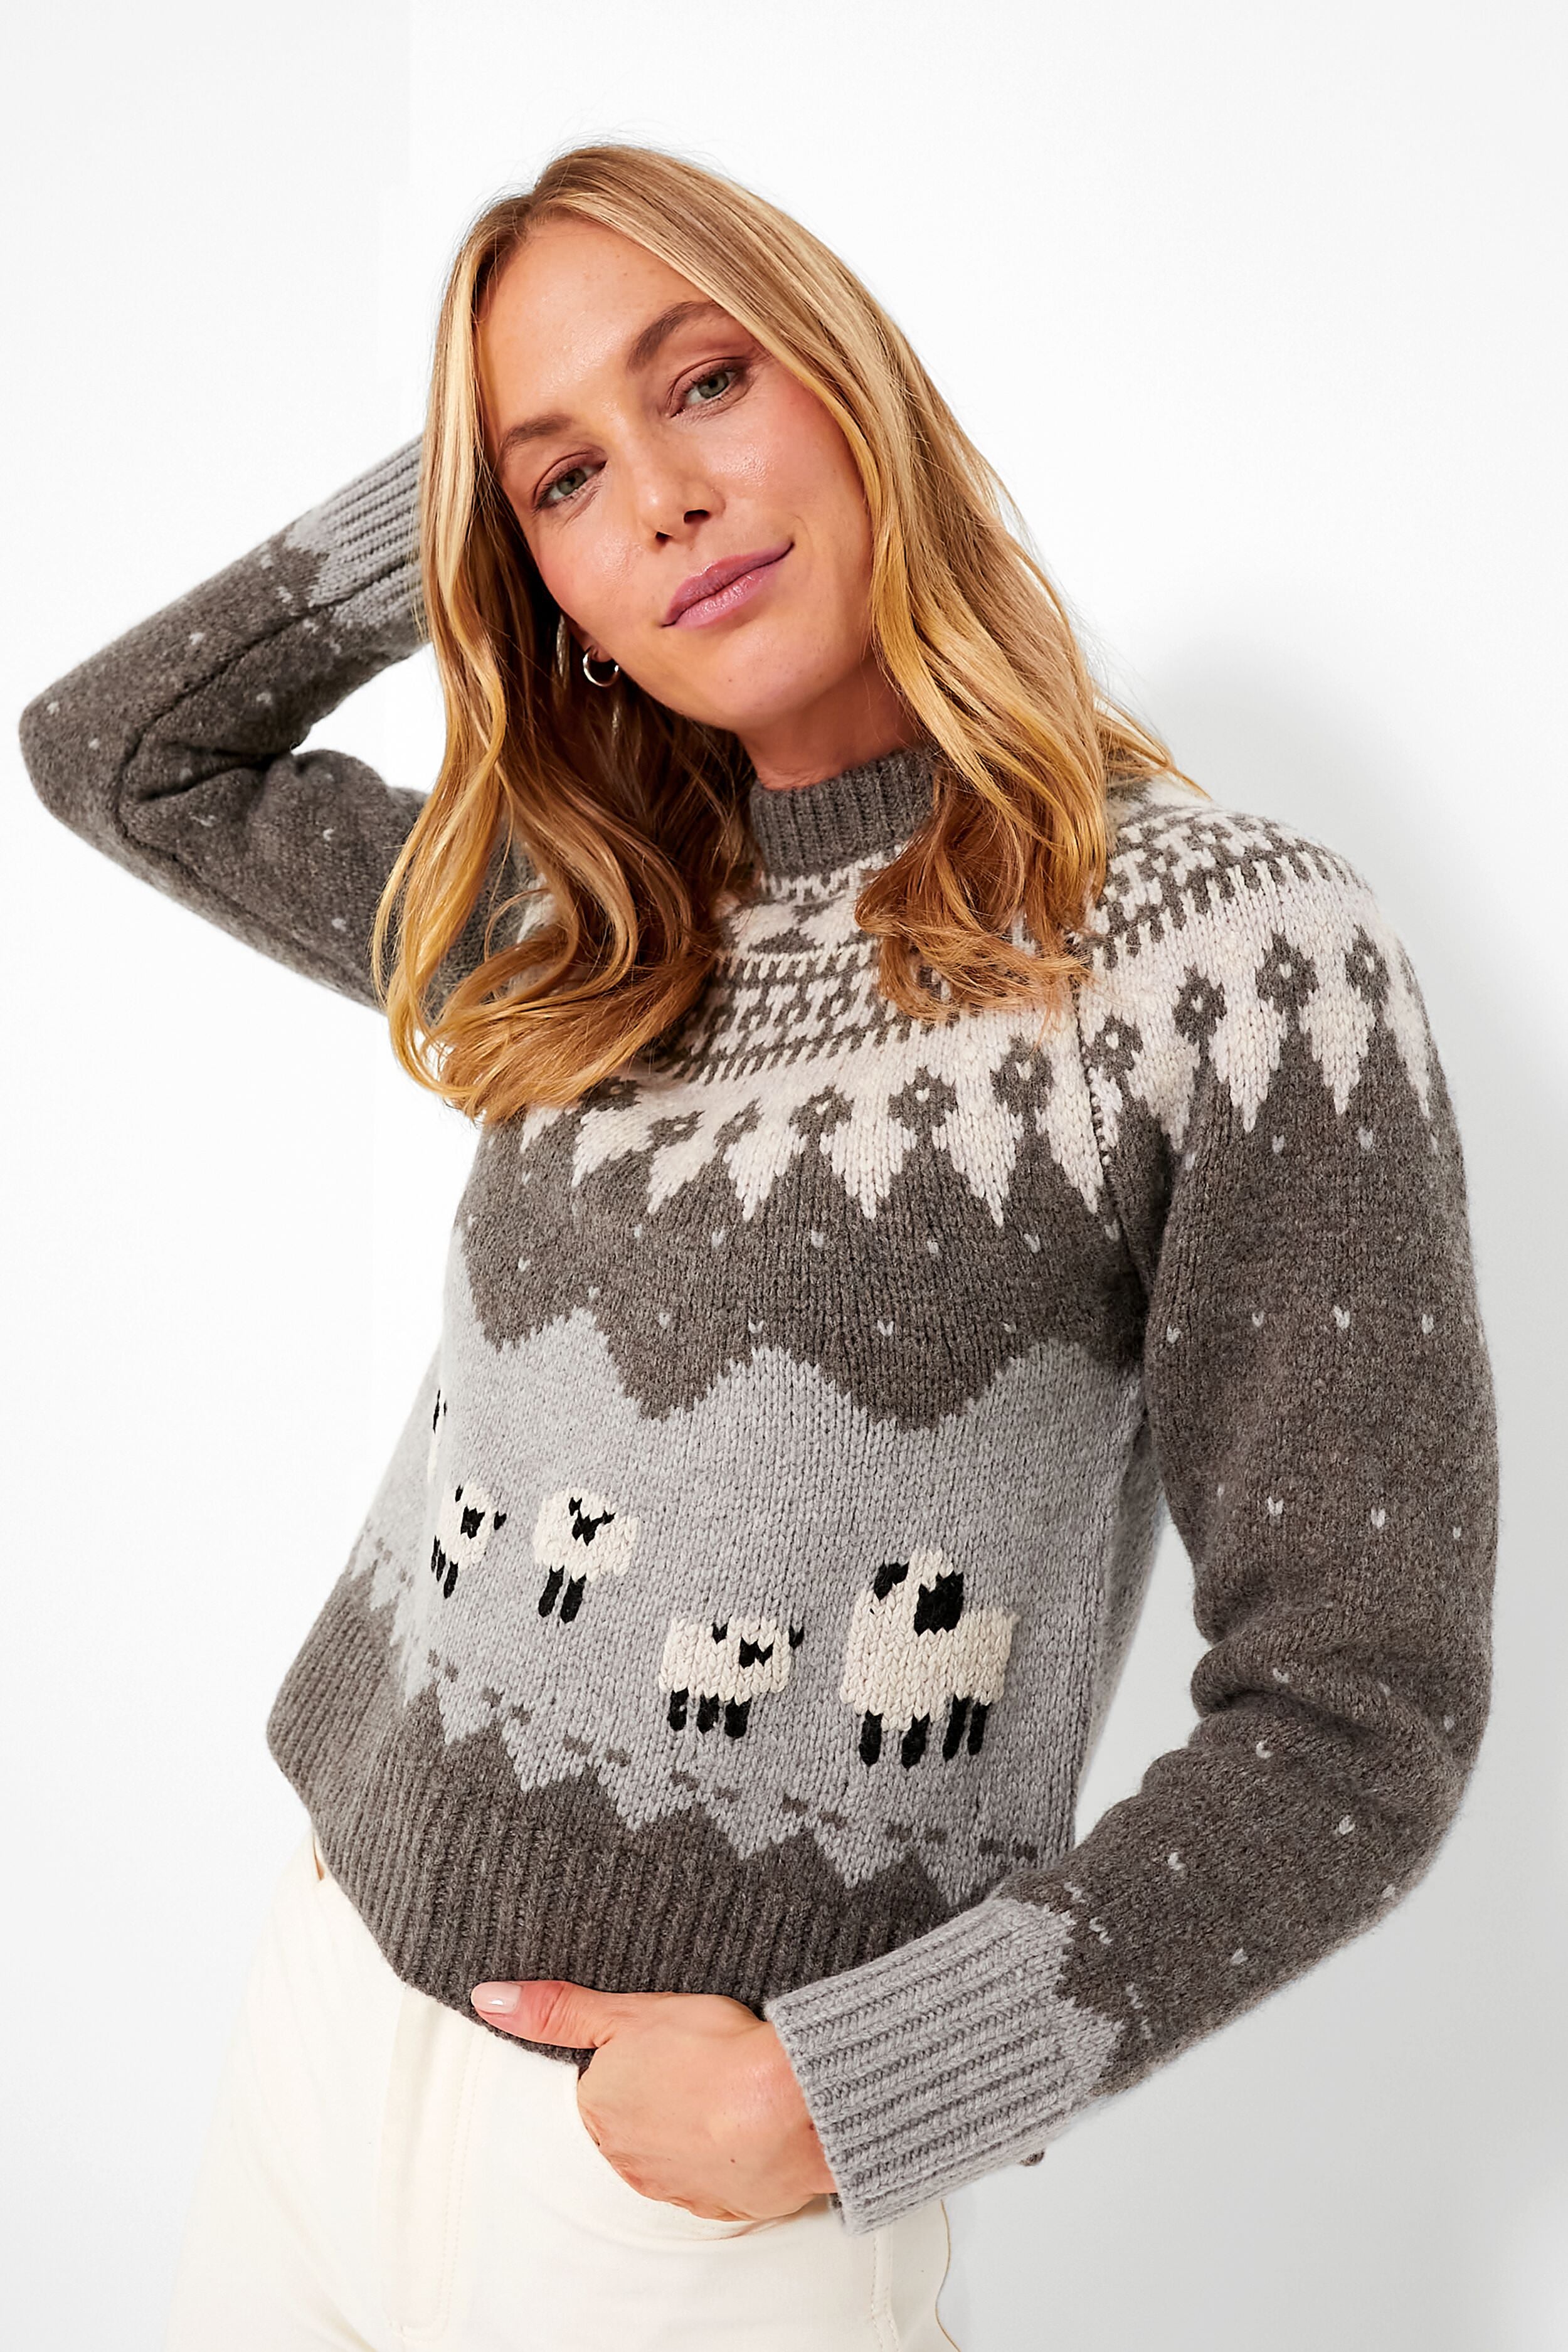 Year of the Tiger Merino Wool Intarsia Sweater